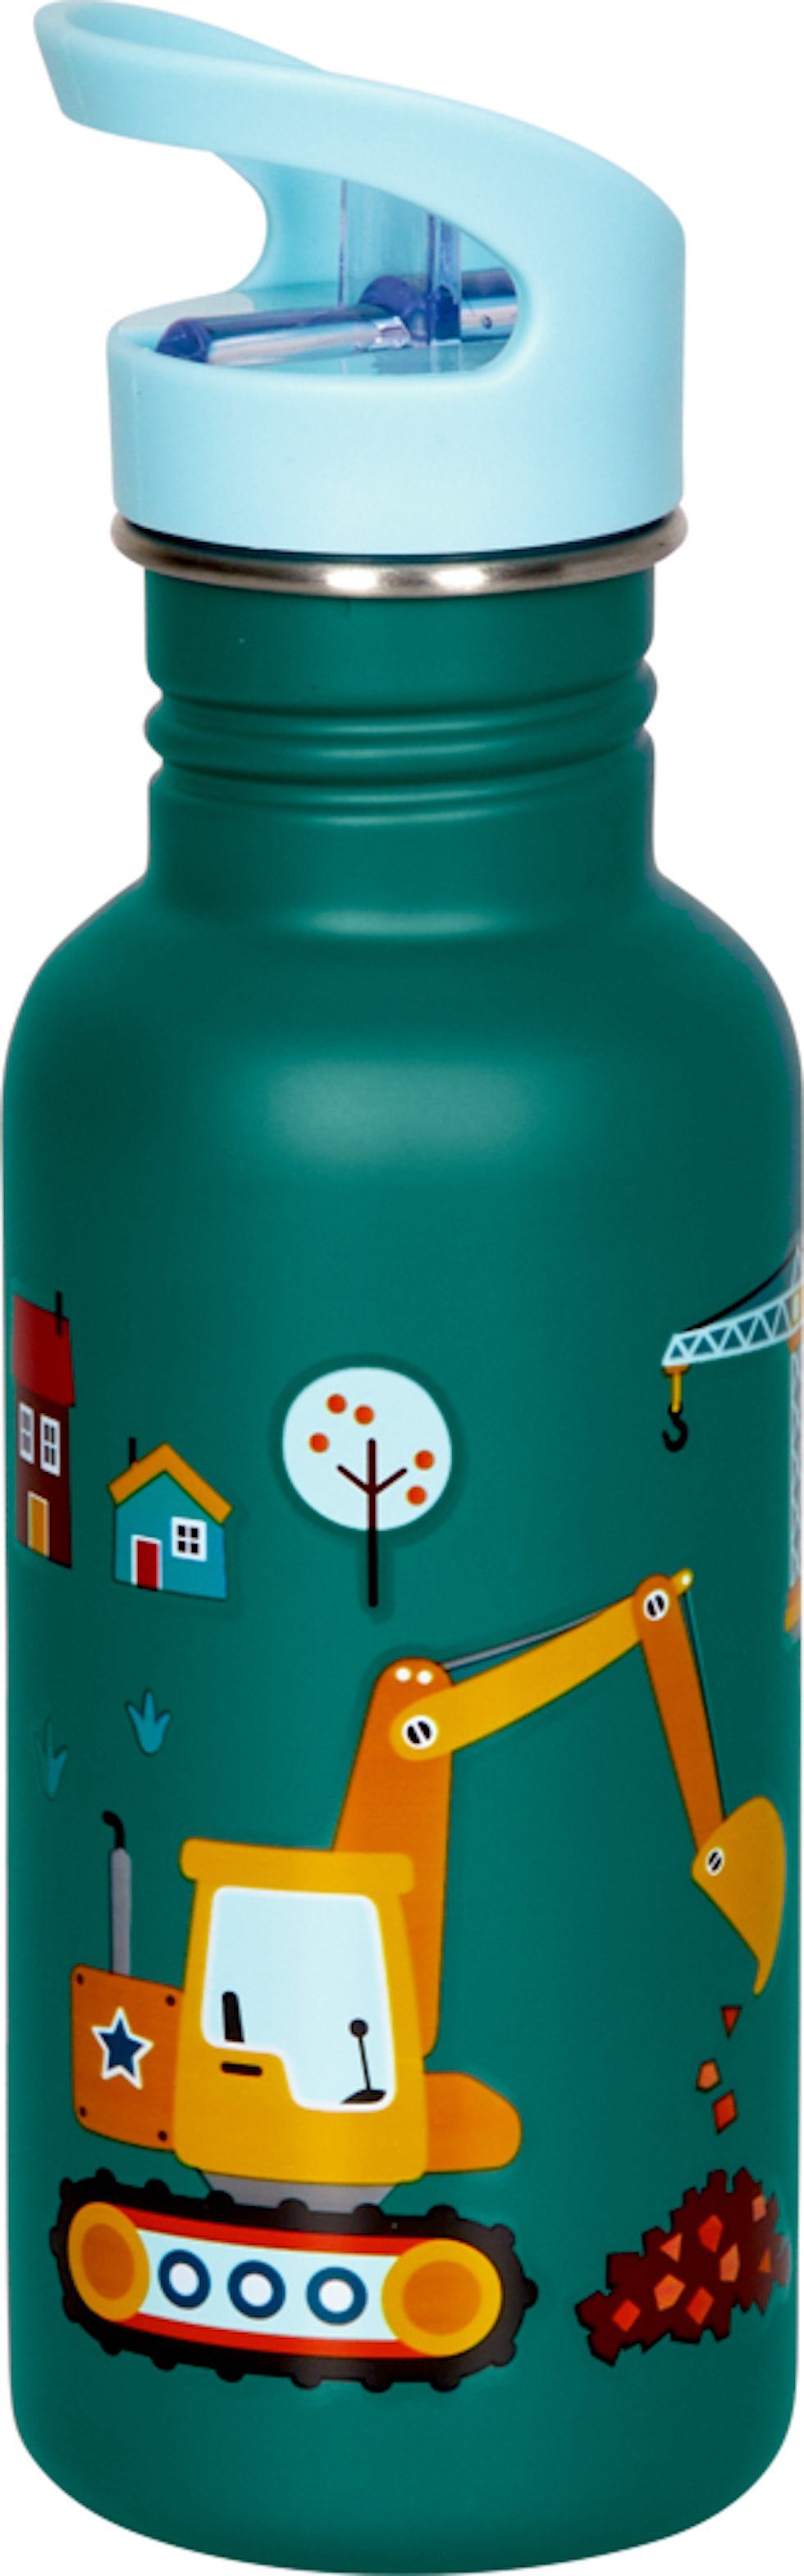 COPPENRATH DIE SPIEGELBURG Trinkflasche Edelstahlflasche Bagger ca. 0,5 l, Wenn ich mal groß bin, mit langlebig, sicherer Trinklösung